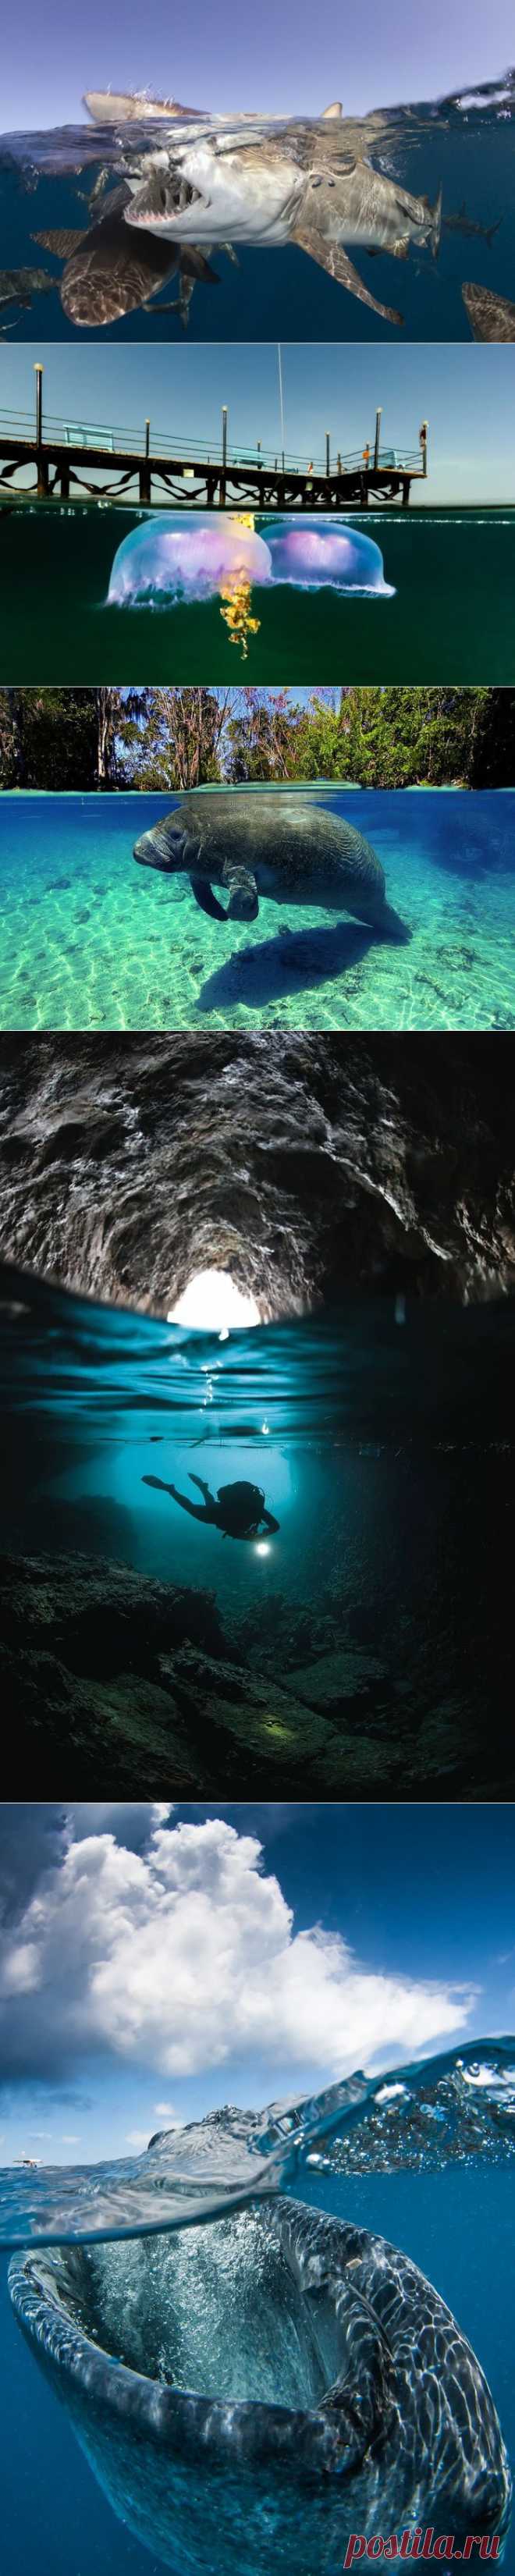 Что скрывается под водой: 34 невероятные фотографии - Познавательно